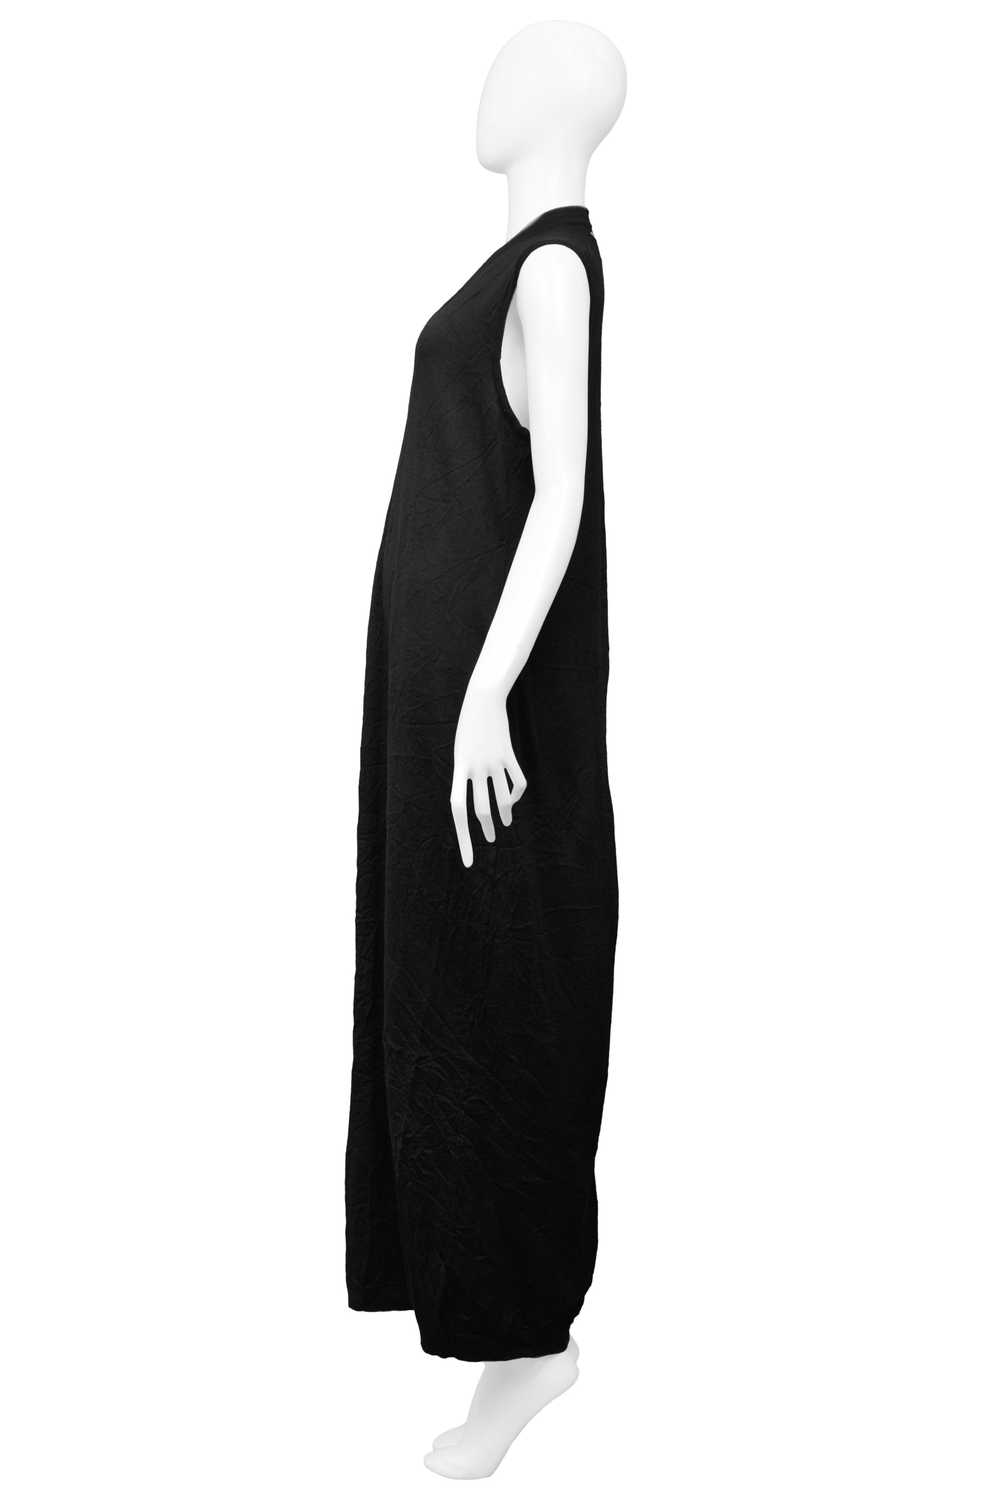 MARGIELA BLACK OVERSIZED SWEATER DRESS - image 3